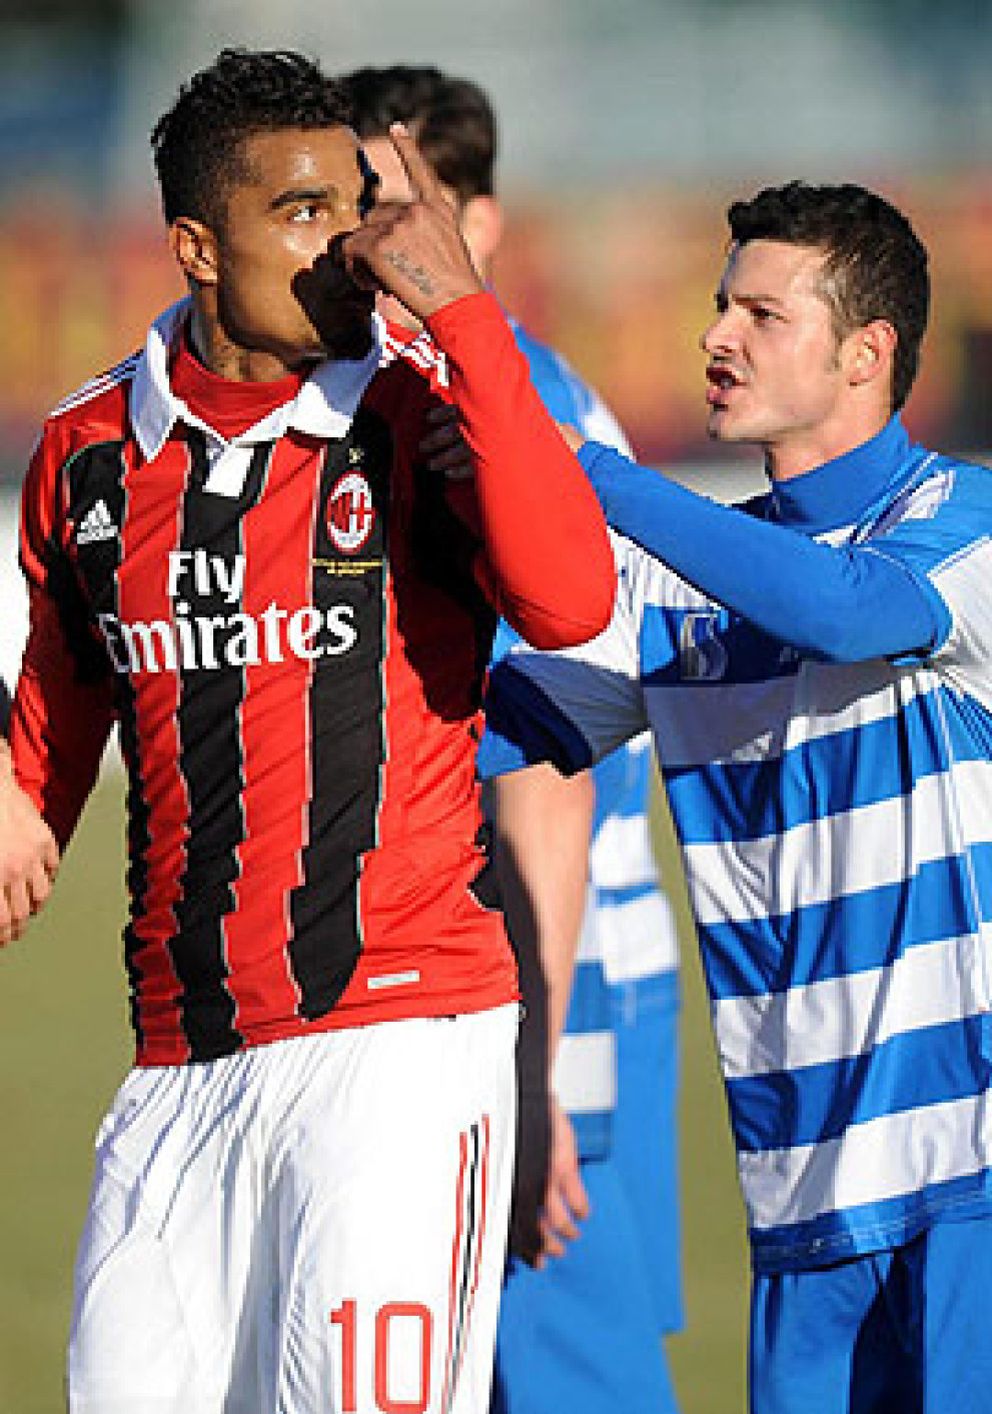 Foto: Los jugadores del AC Milan abandonan un partido amistoso tras recibir insultos racistas